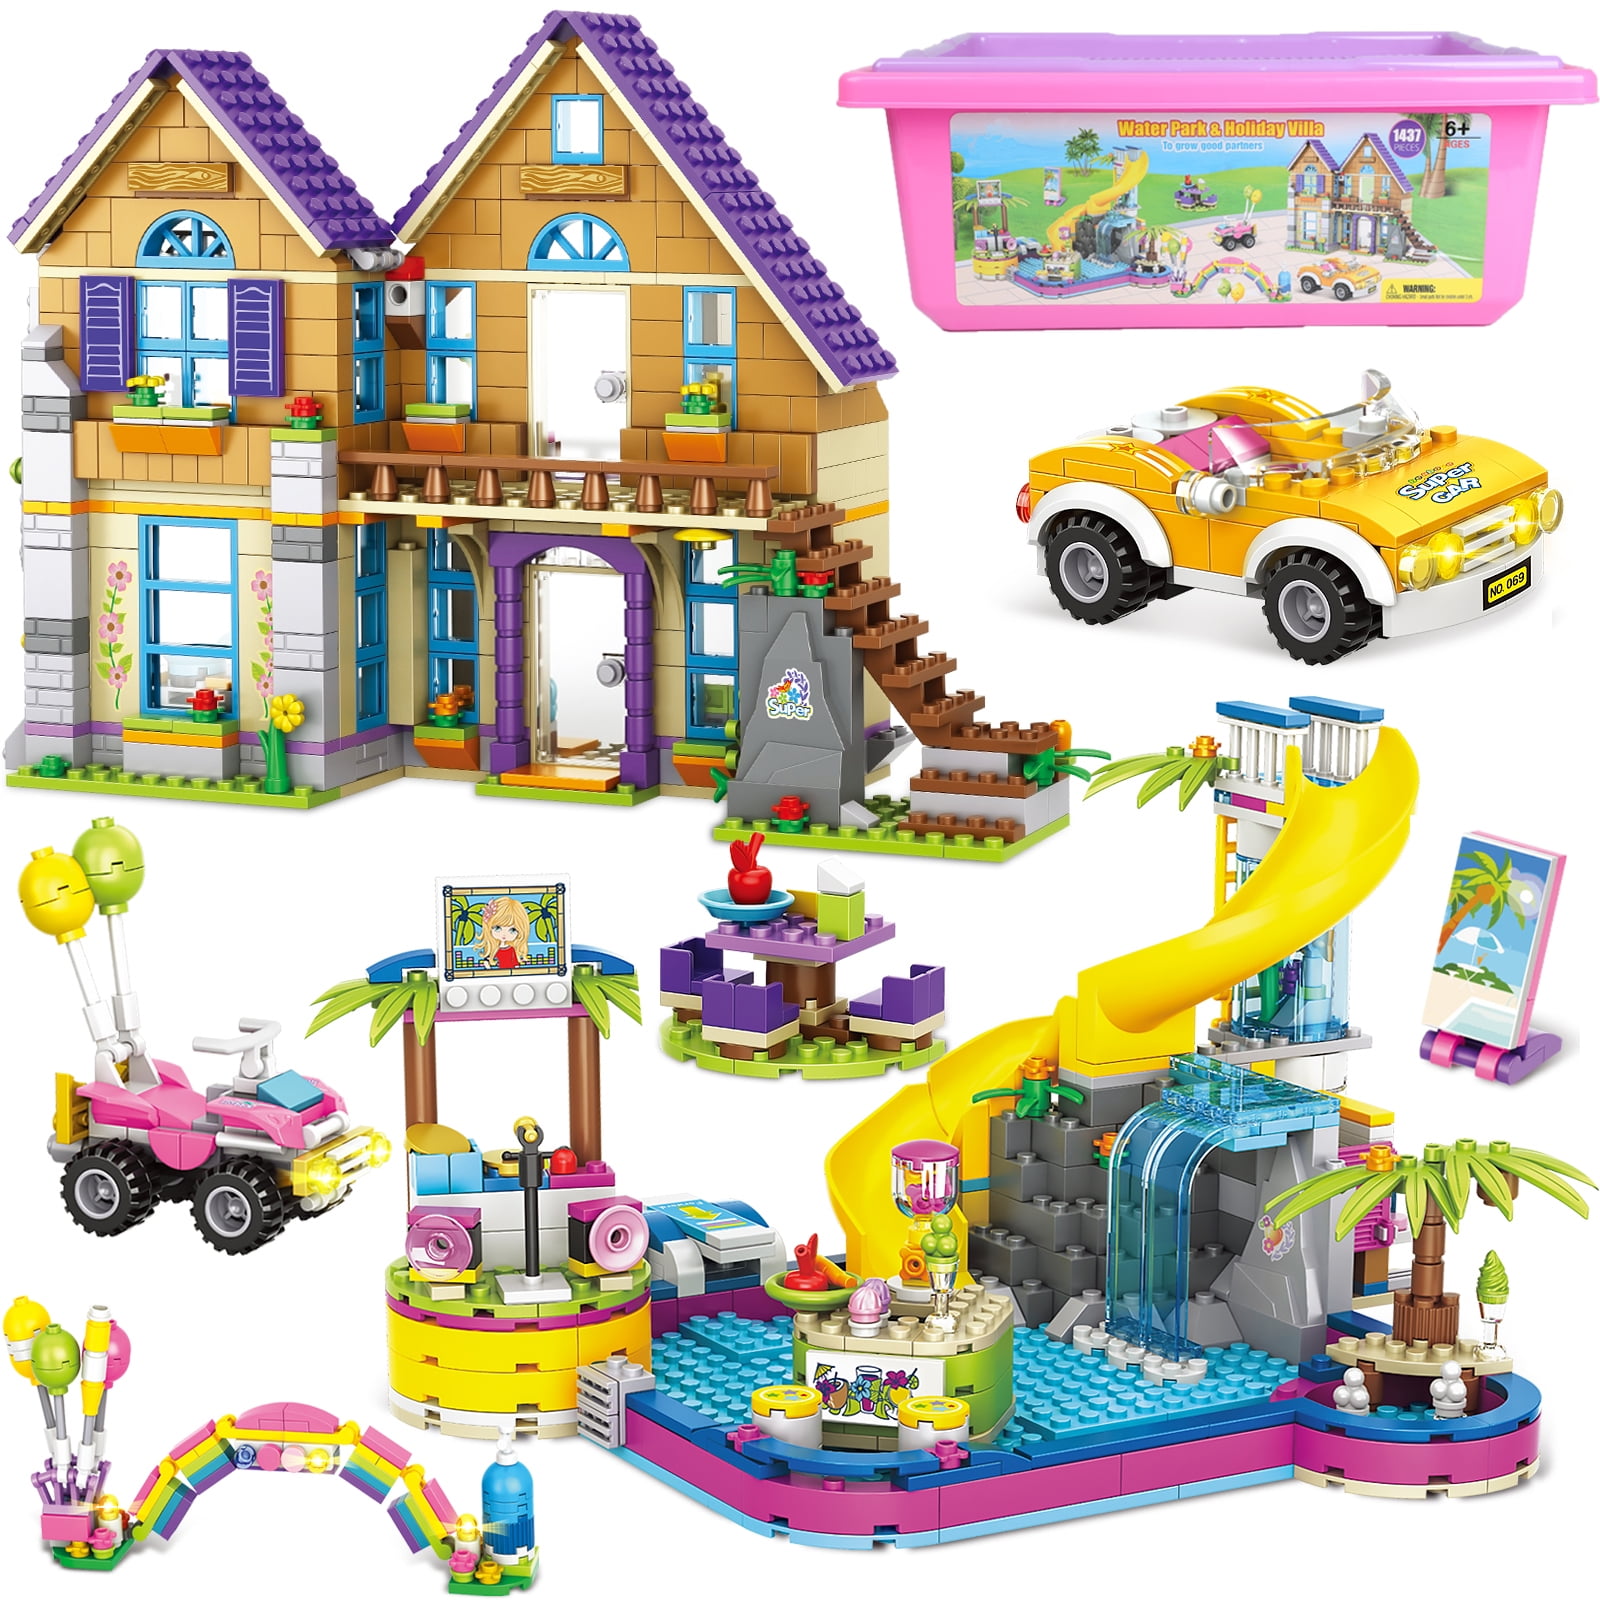 Lego Friends Salão De Cabeleireiro - 41743 - Arco-Íris Toys